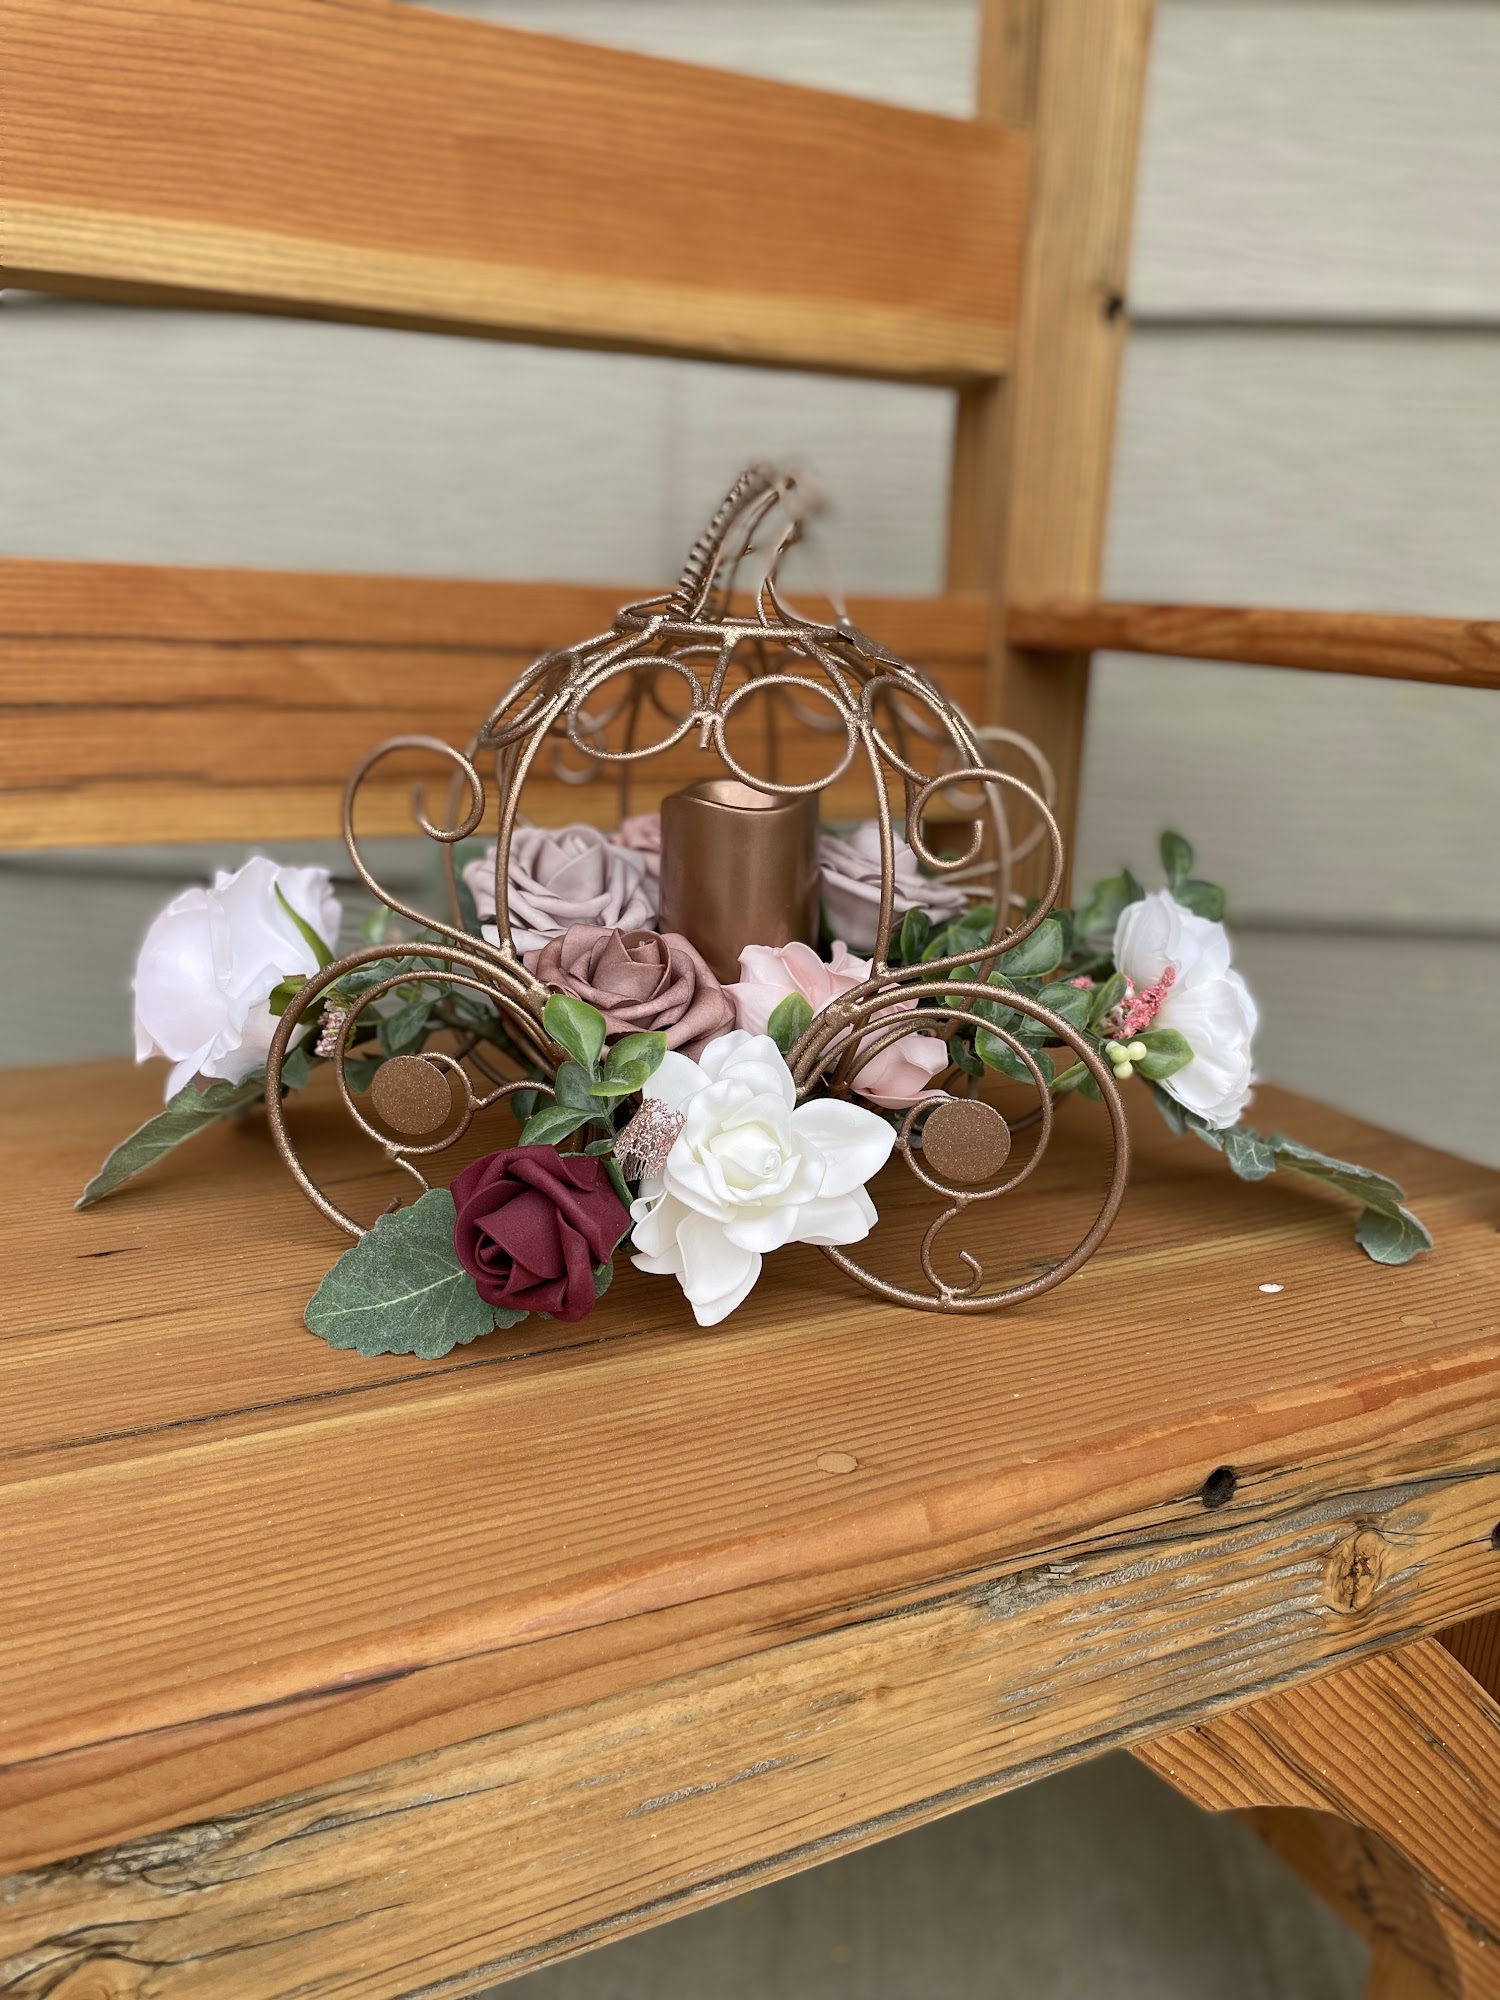 The Flower Basket 503 N Merrill Ave # 8, Glendive Montana 59330